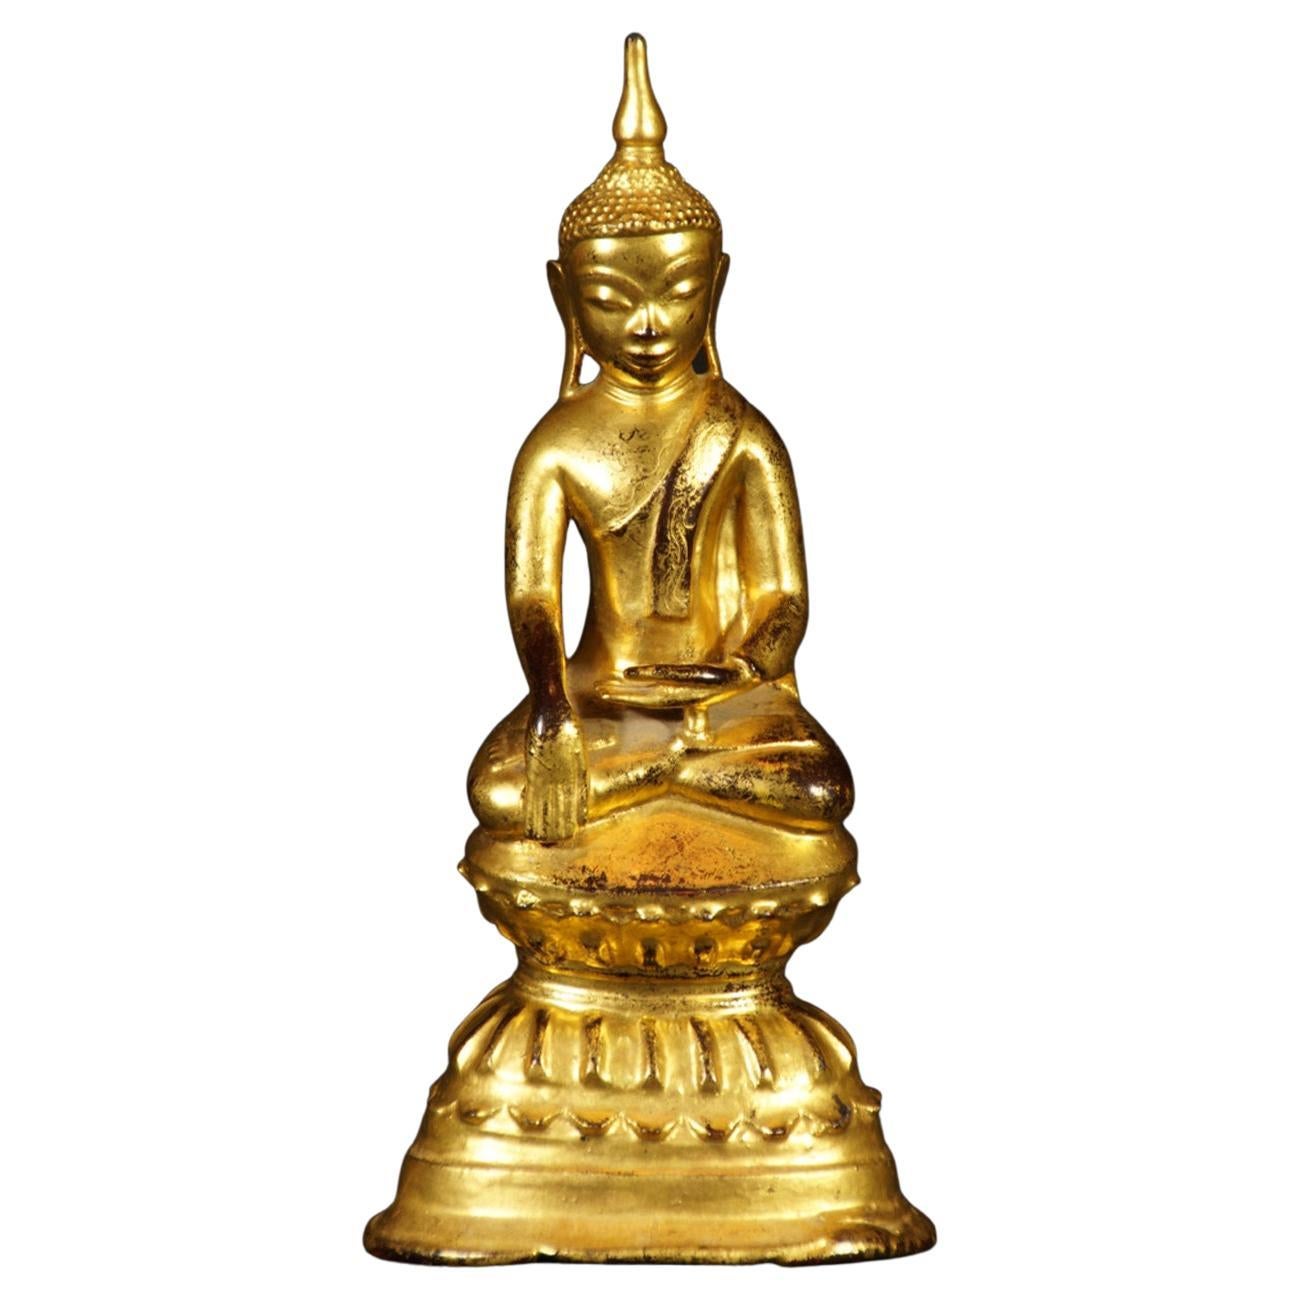 Authentische antike Bronze-Buddha-Statue aus Burma aus dem 18. Jahrhundert: Original Buddhas